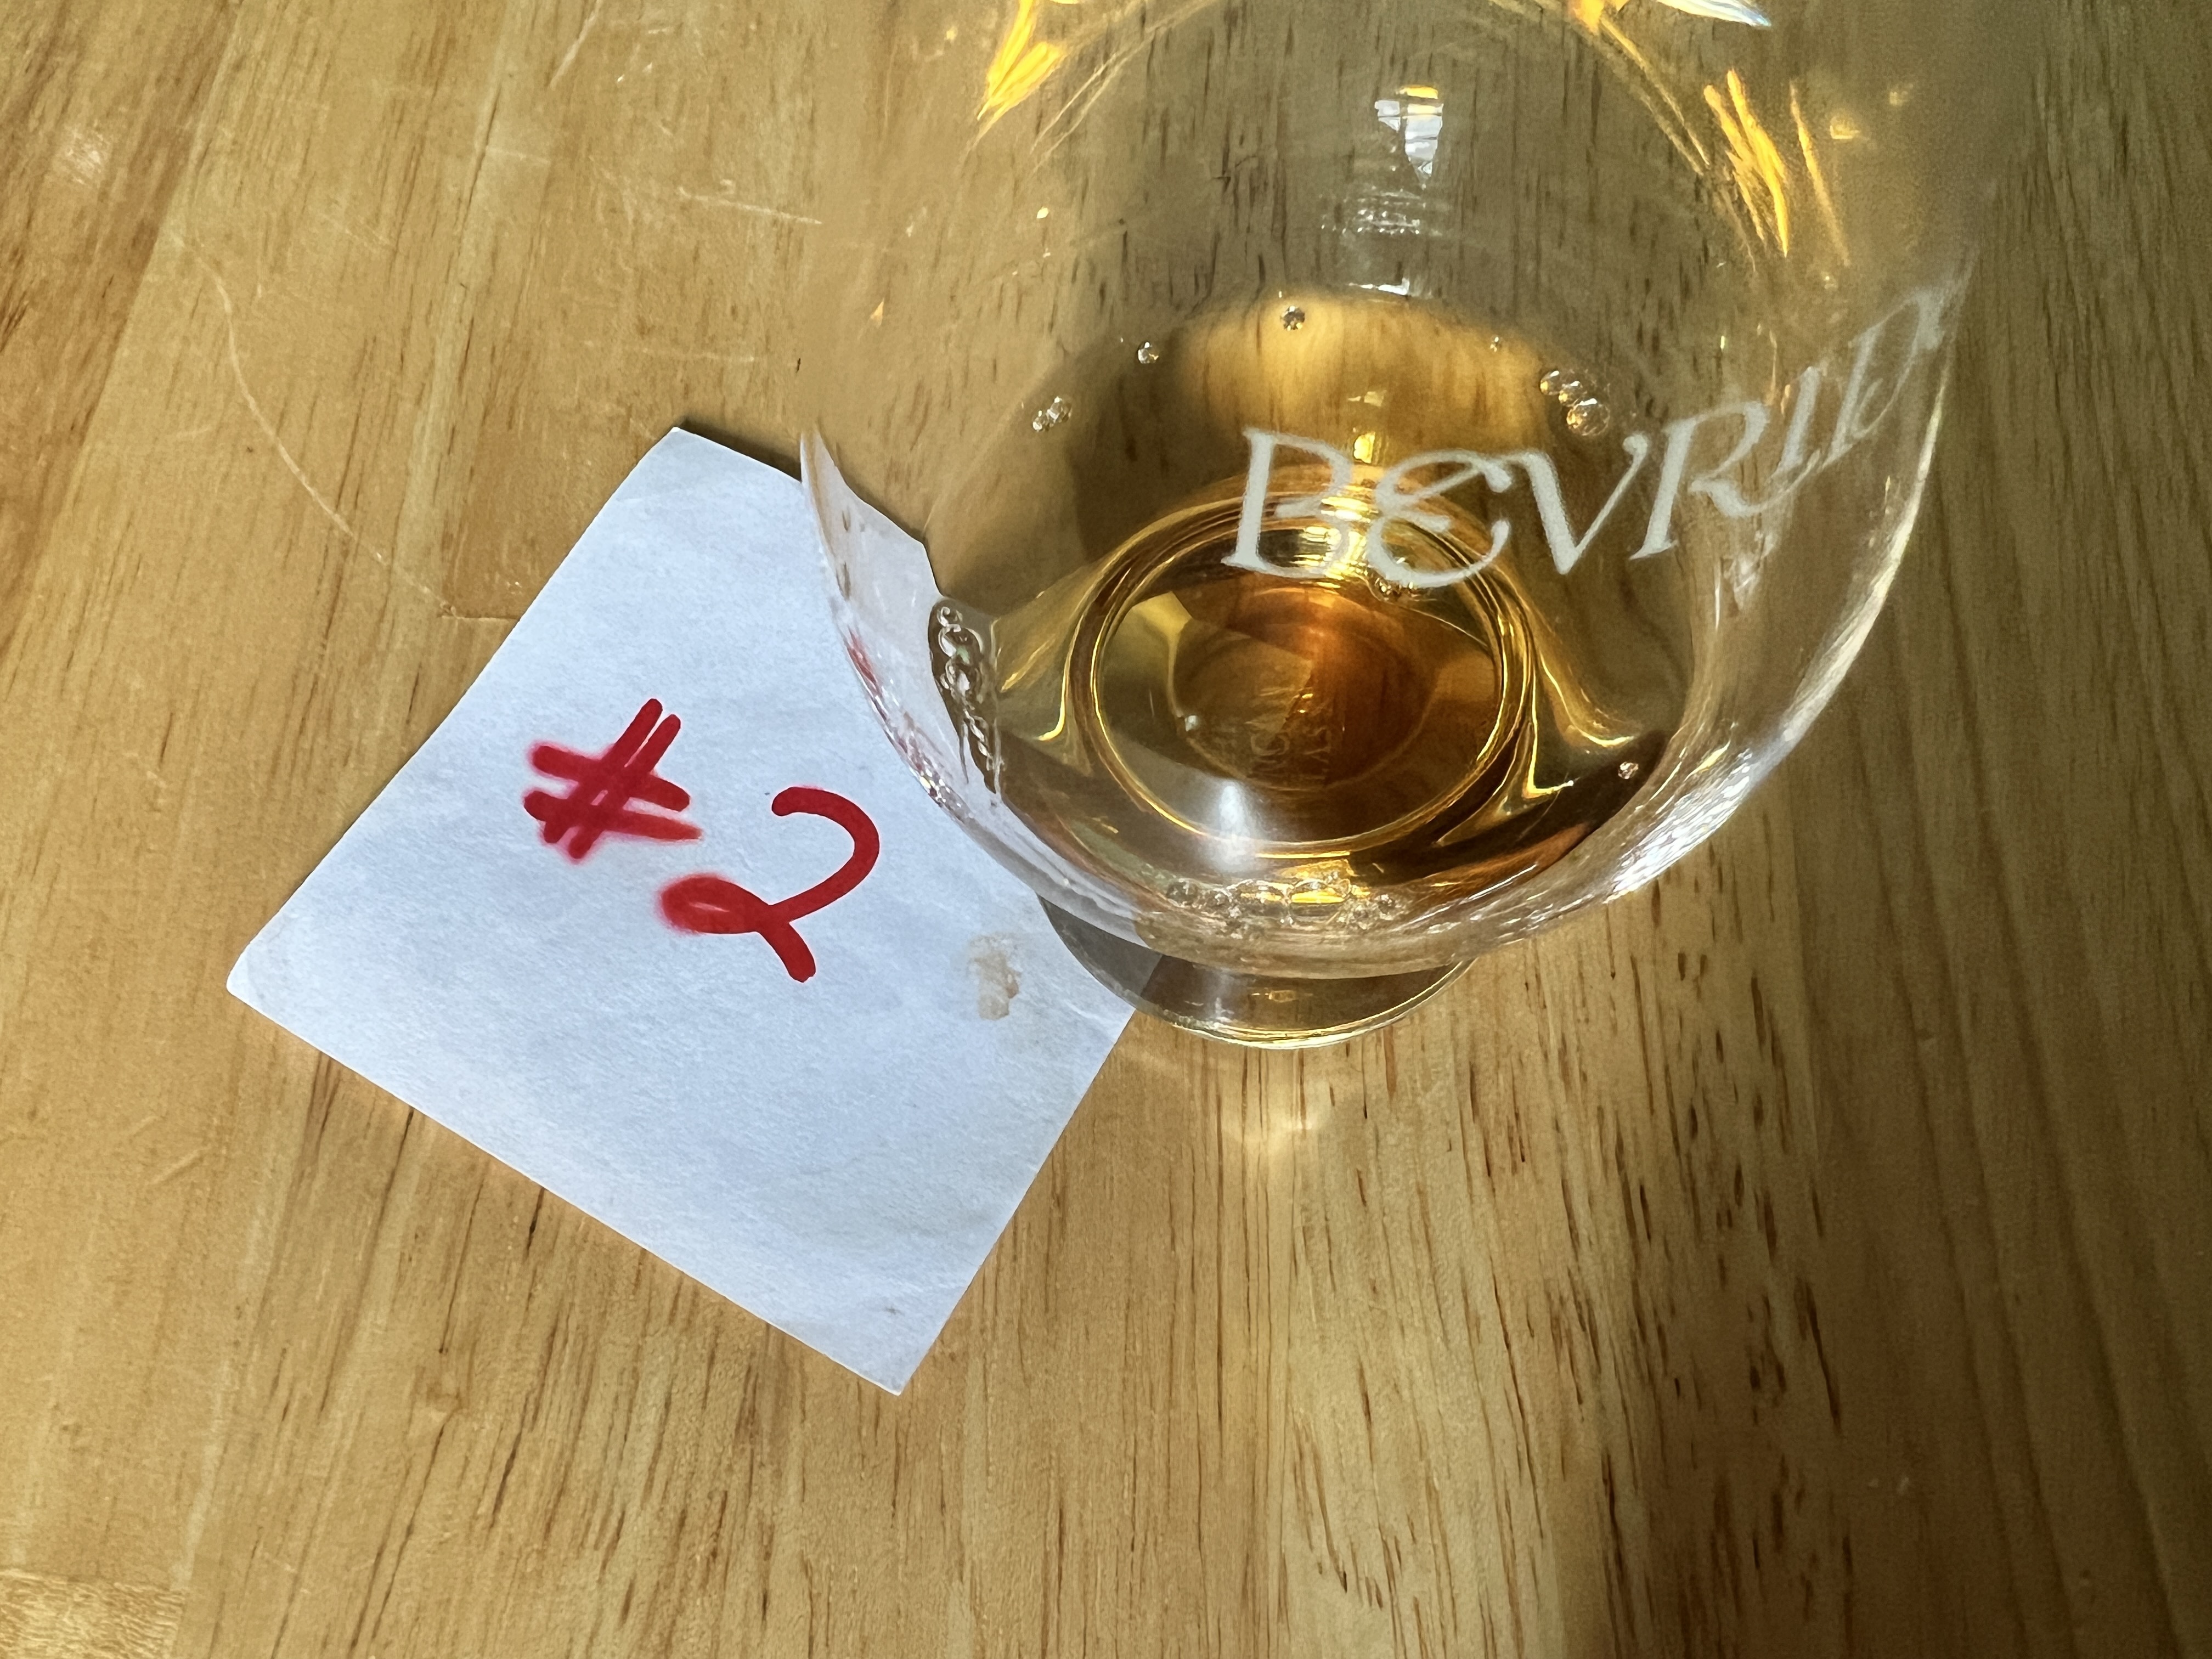 Rare Scotch Whisky